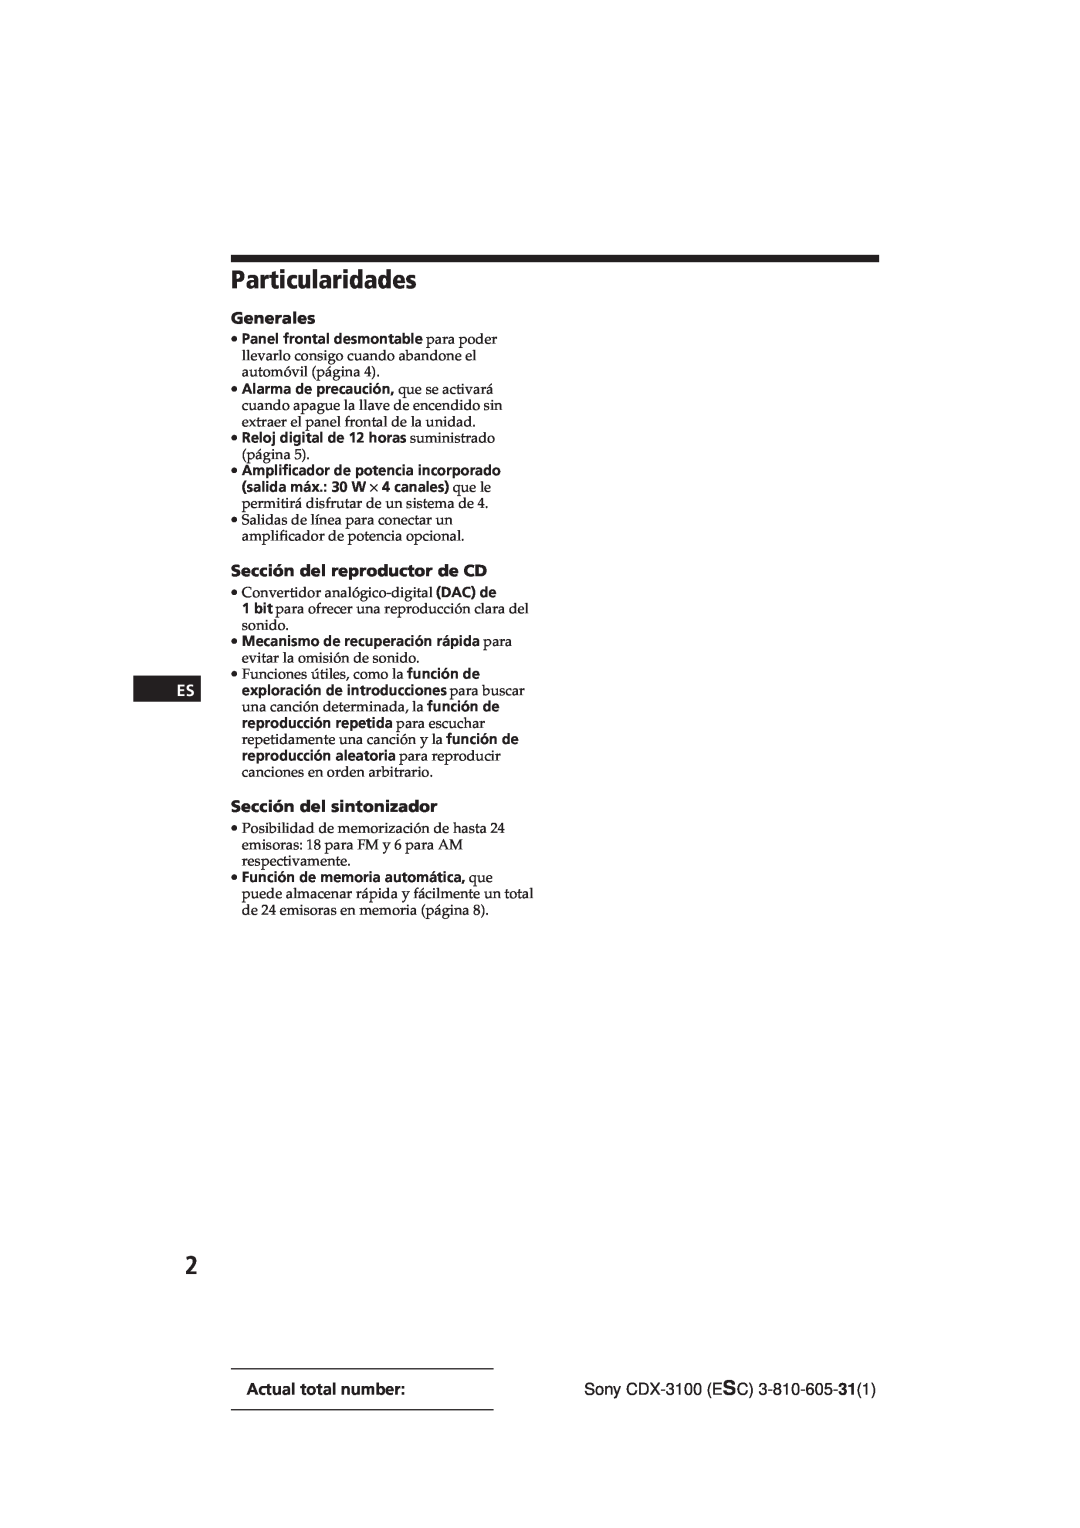 Sony Model CDX-3100 manual Particularidades, Generales, Sección del reproductor de CD, Sección del sintonizador 